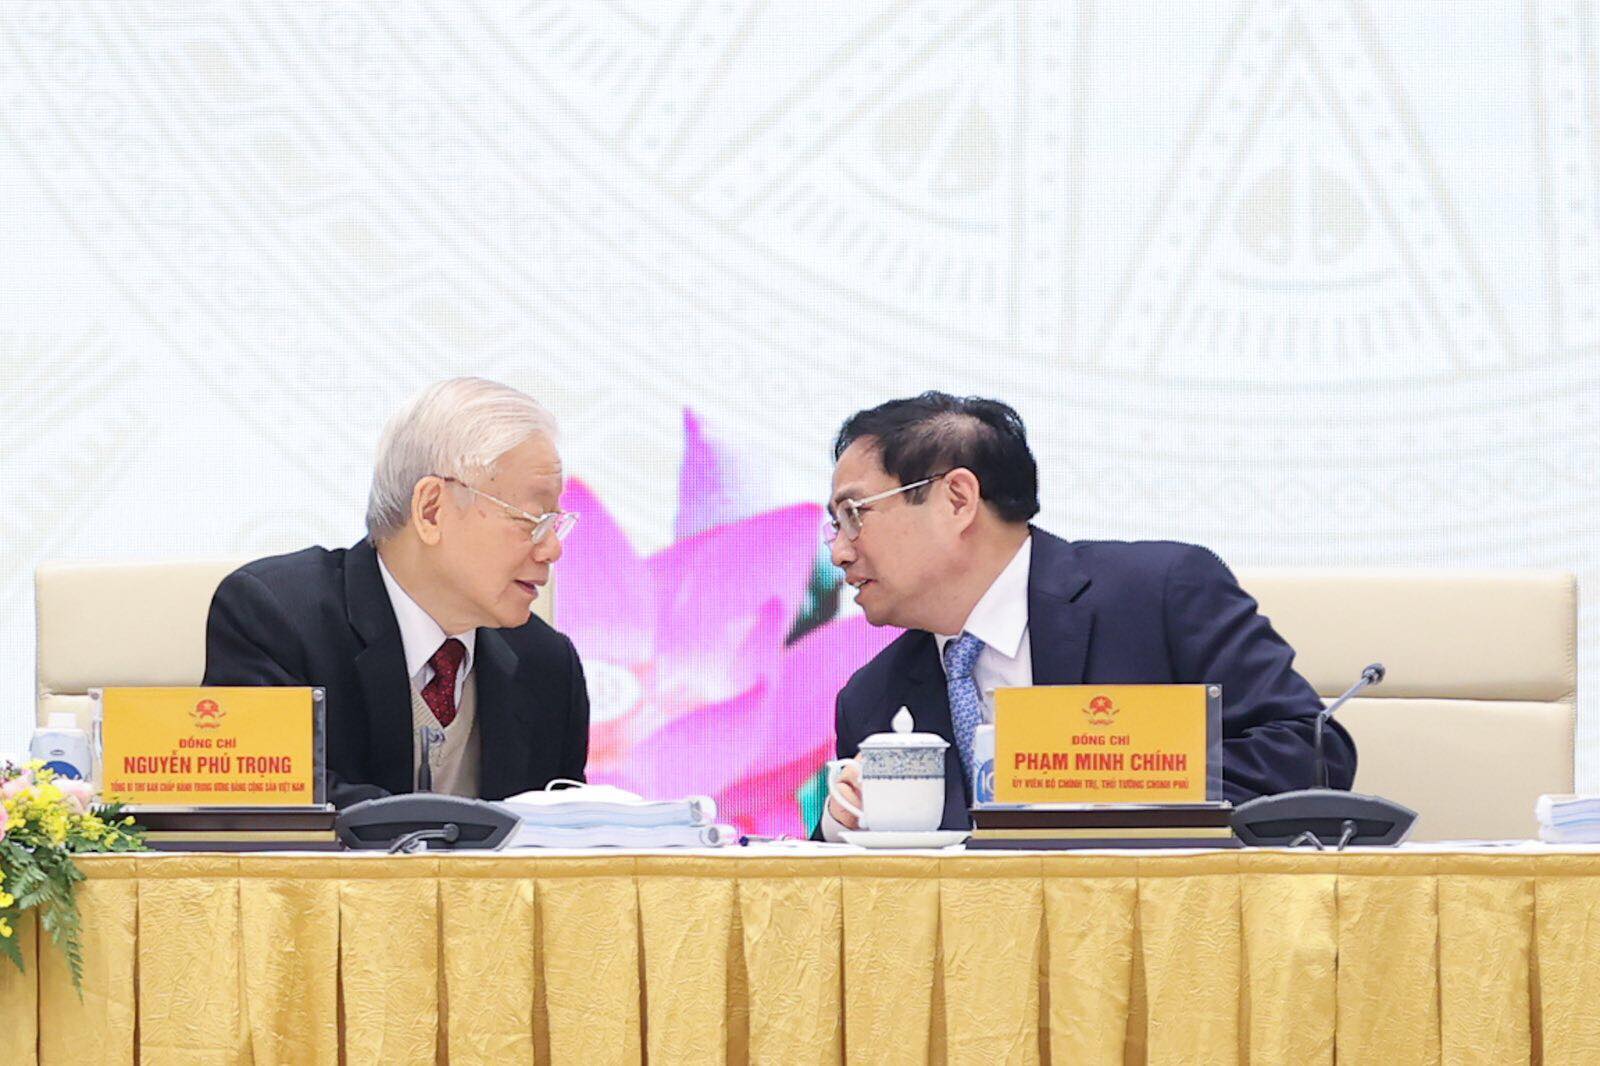 Tổng Bí thư Nguyễn Phú Trọng trao đổi cùng Thủ tướng Phạm Minh Chính tại Hội nghị. Ảnh: VGP/Nhật Bắc